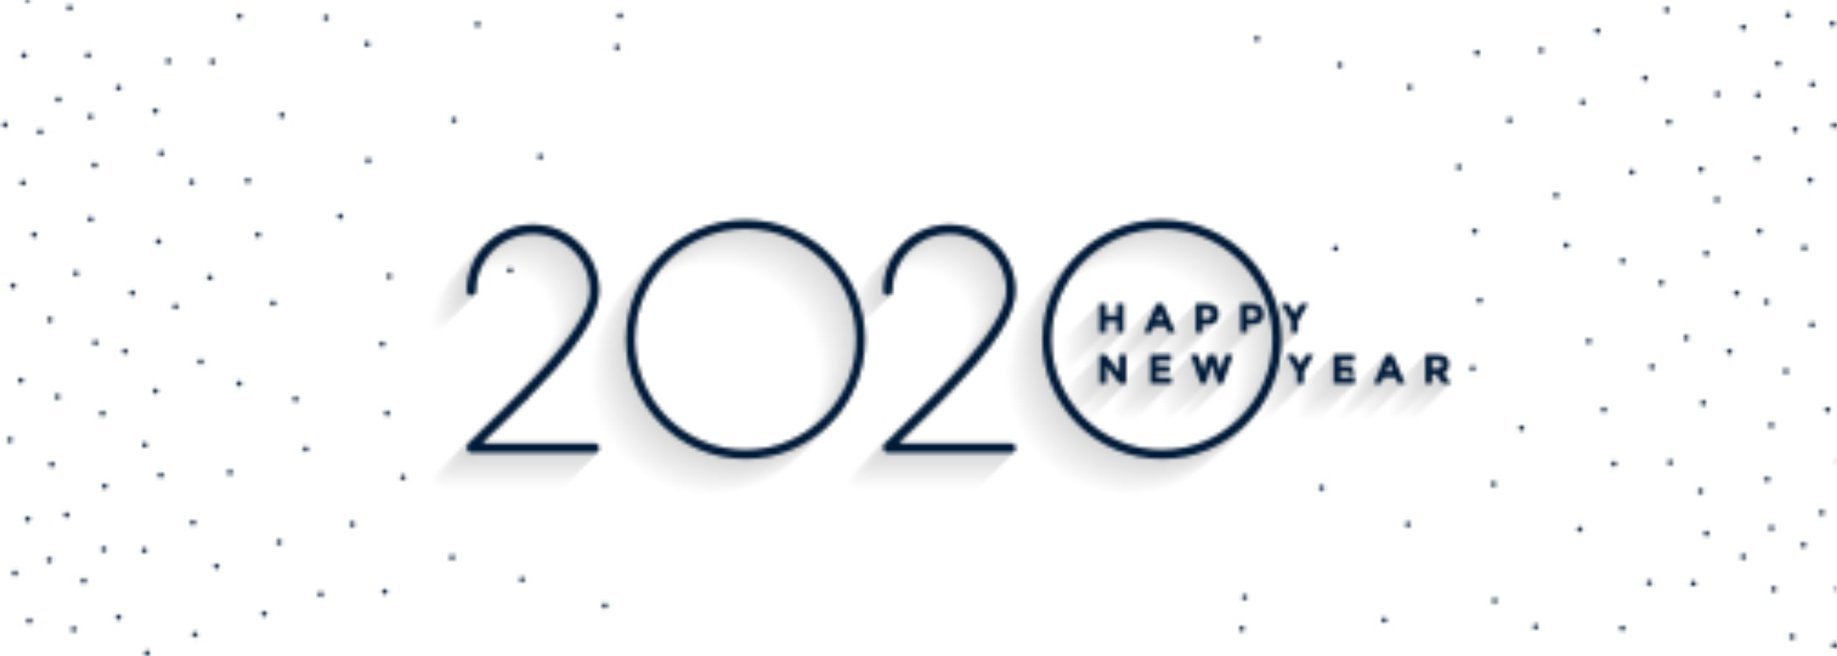 Szczęśliwego Nowego Roku 2020!